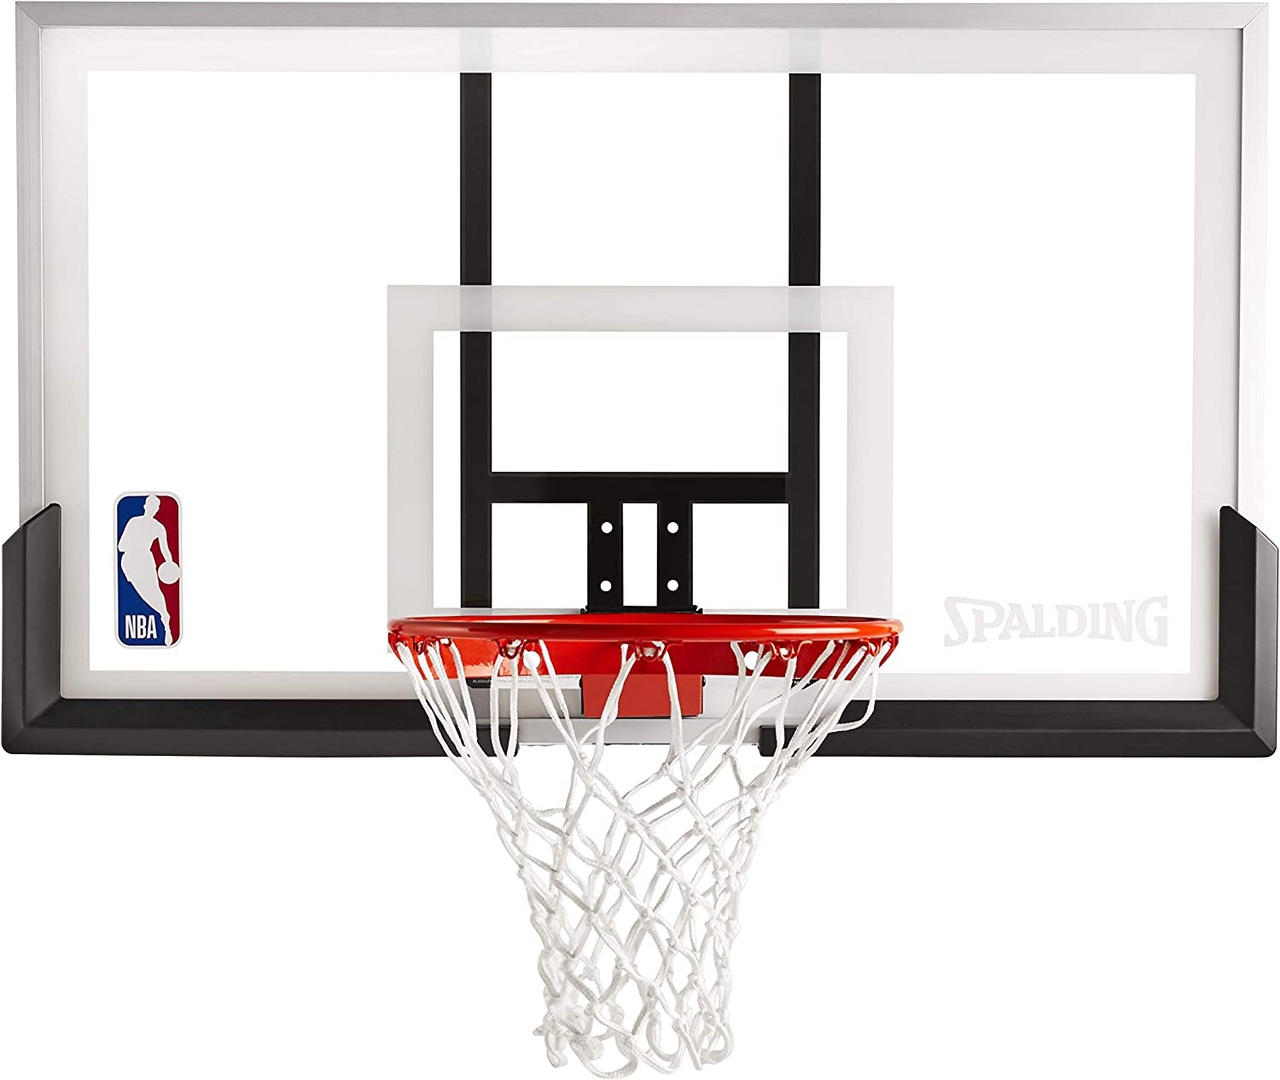 Tablero de basket basketball baloncesto nueva en acrilico con aro, malla y bola